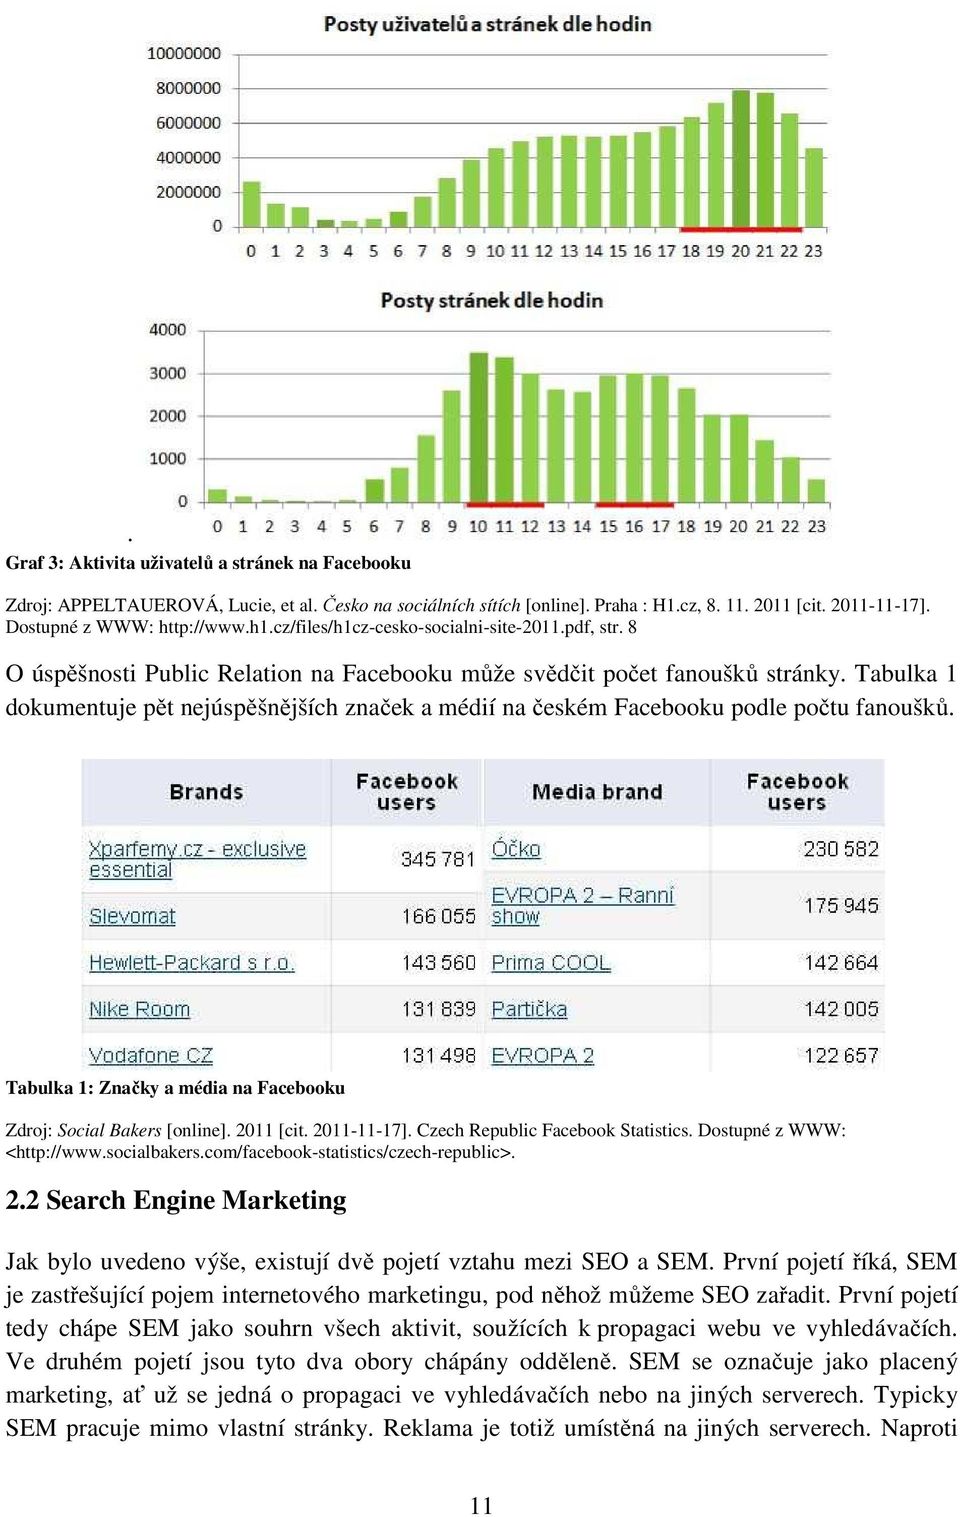 Tabulka 1 dokumentuje pět nejúspěšnějších značek a médií na českém Facebooku podle počtu fanoušků. Tabulka 1: Značky a média na Facebooku Zdroj: Social Bakers [online]. 2011 [cit. 2011-11-17].